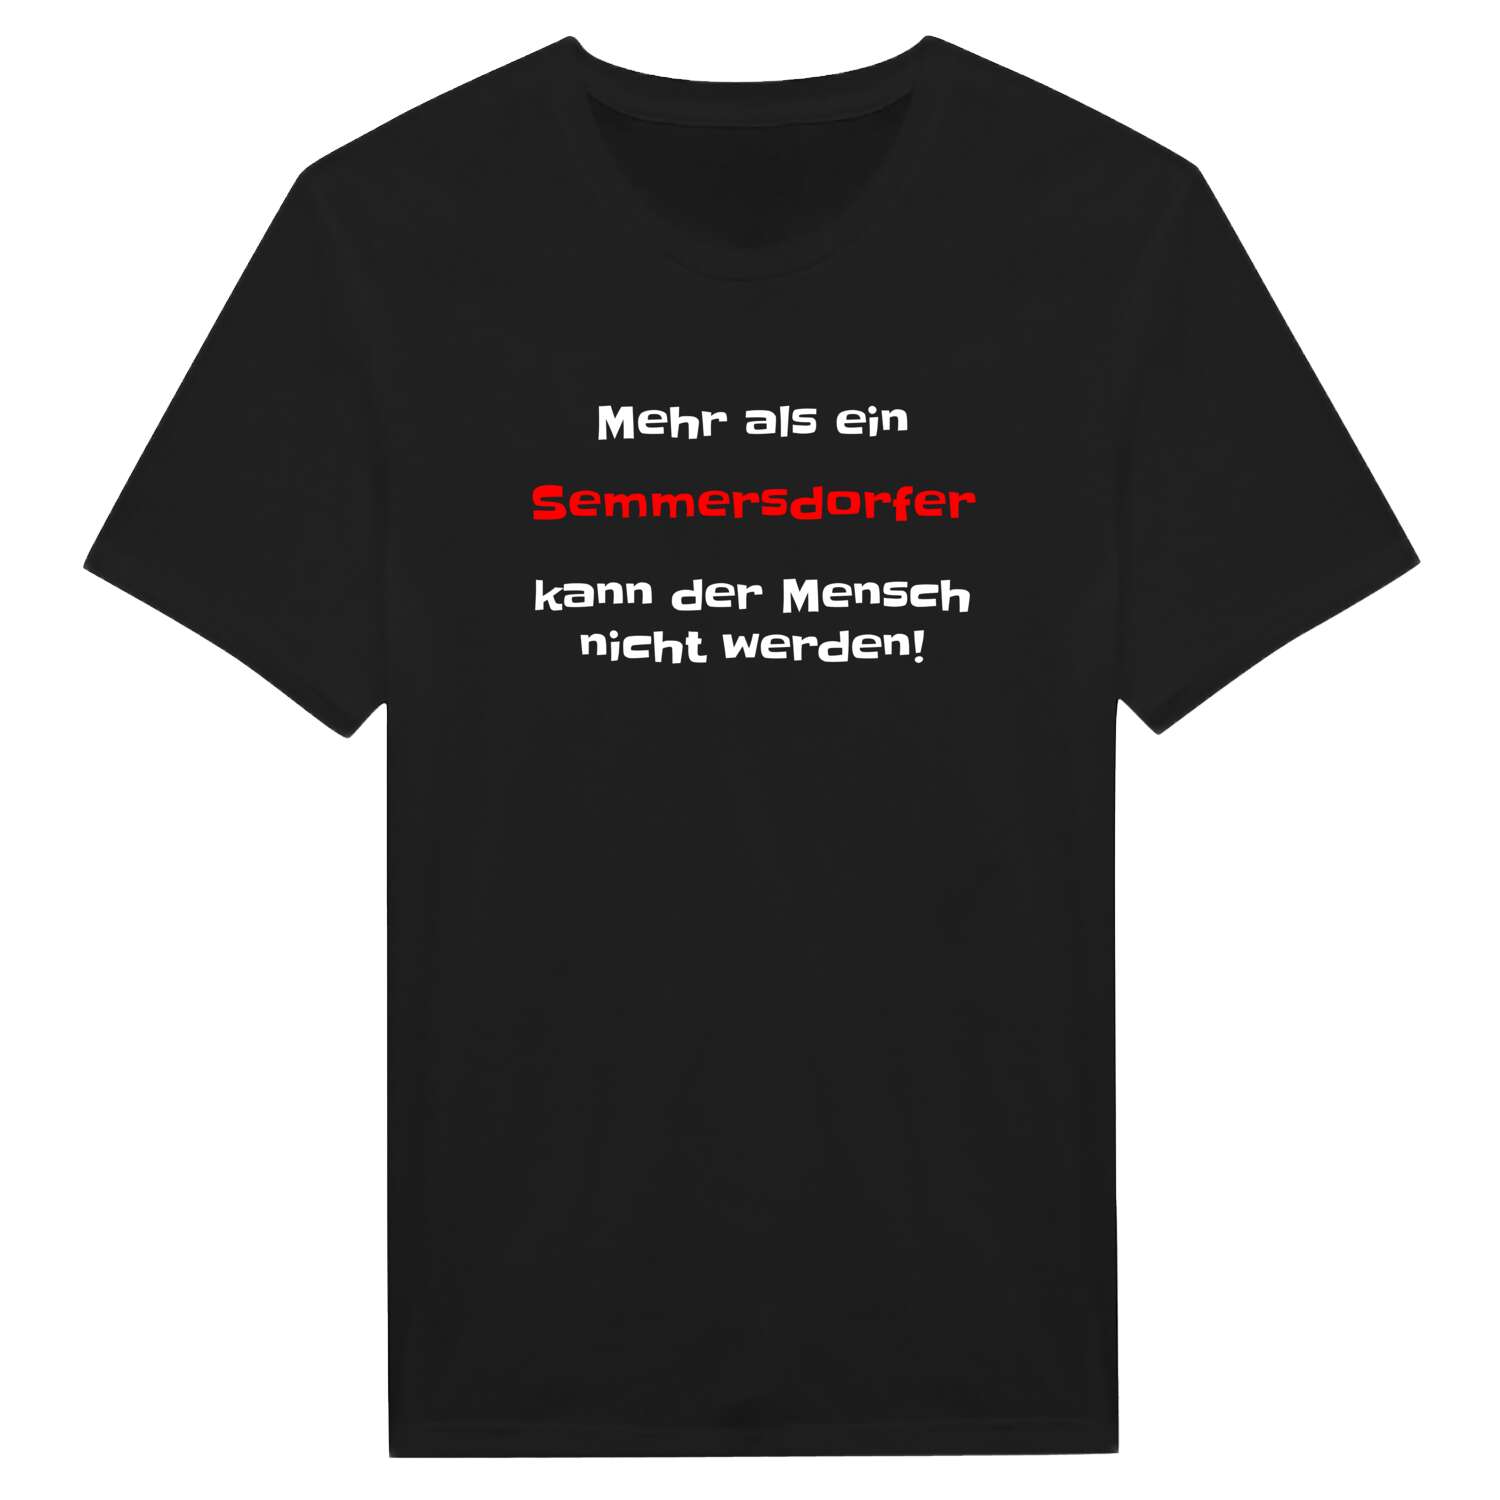 Semmersdorf T-Shirt »Mehr als ein«